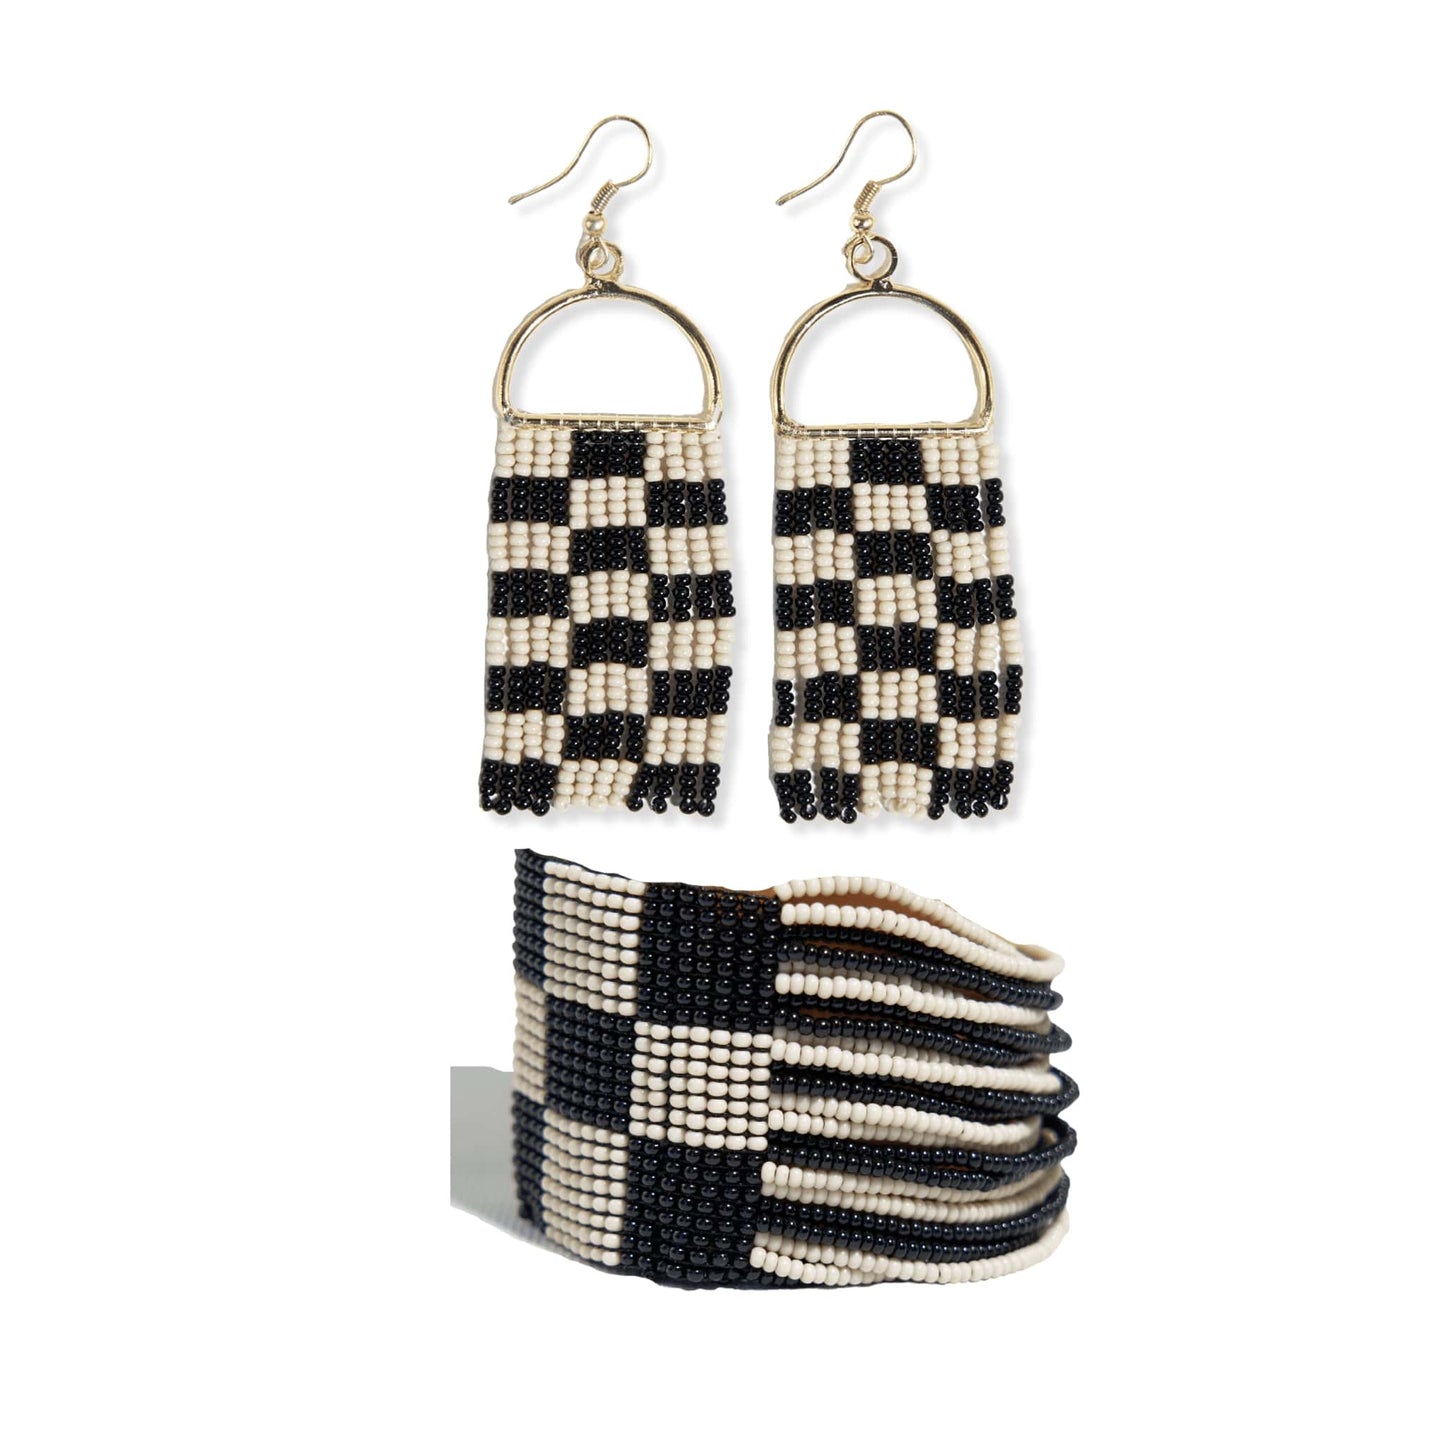 Allison + Olive checkered beaded earrings and bracelet set Black/White